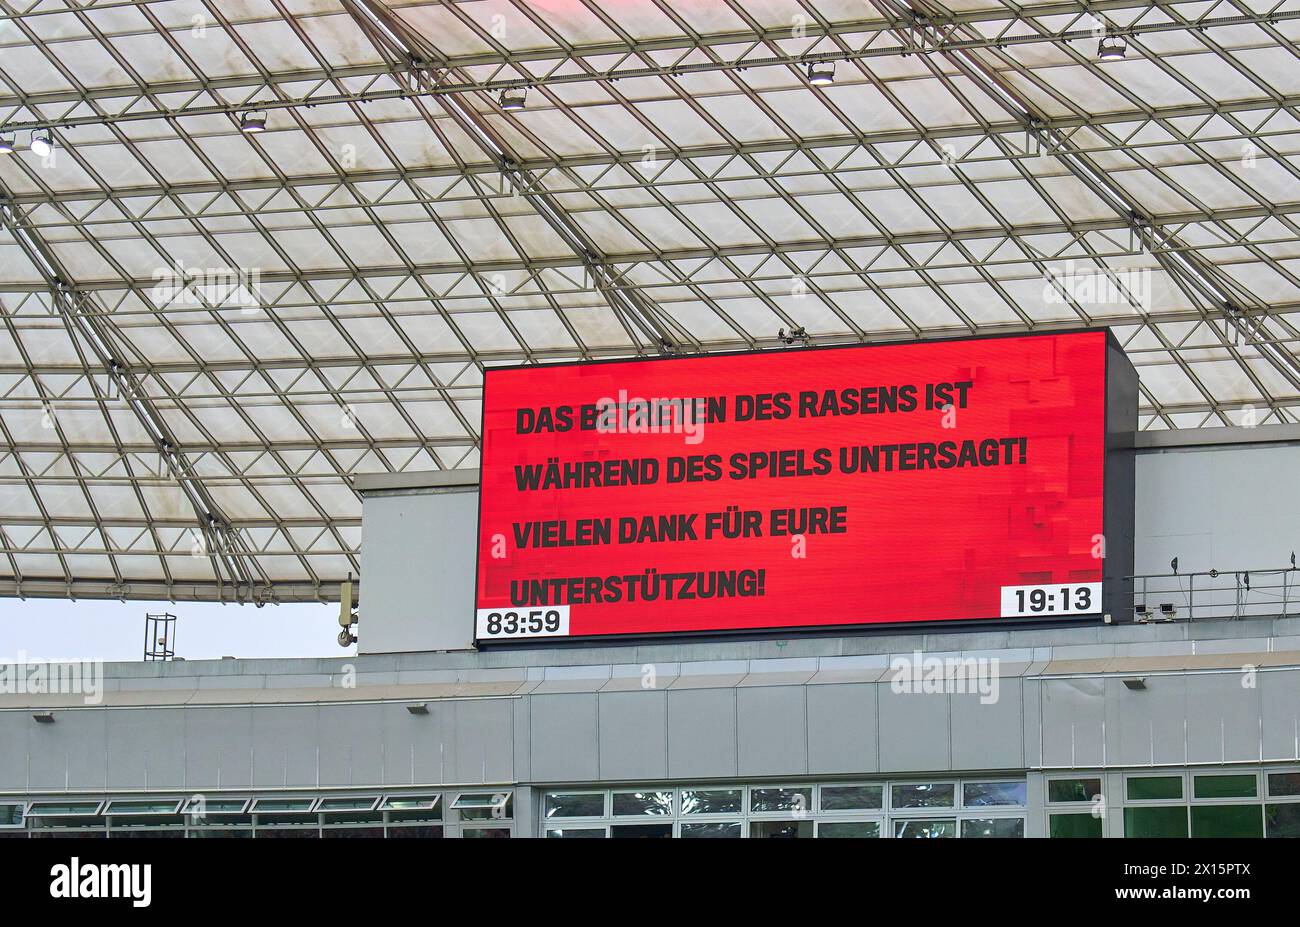 Screen board se souvient qu'il est interdit d'entrer sur le terrain après le match BAYER 04 LEVERKUSEN - SV WERDER BRÊME 5-0 le 14 avril 2024 à Leverkusen, Allemagne. Saison 2023/2024, 1.Bundesliga,, Journée 29, 29.Spieltag photographe : ddp images / STAR-images - LA RÉGLEMENTATION DFL INTERDIT TOUTE UTILISATION DE PHOTOGRAPHIES comme SÉQUENCES D'IMAGES et/ou QUASI-VIDÉO - Banque D'Images